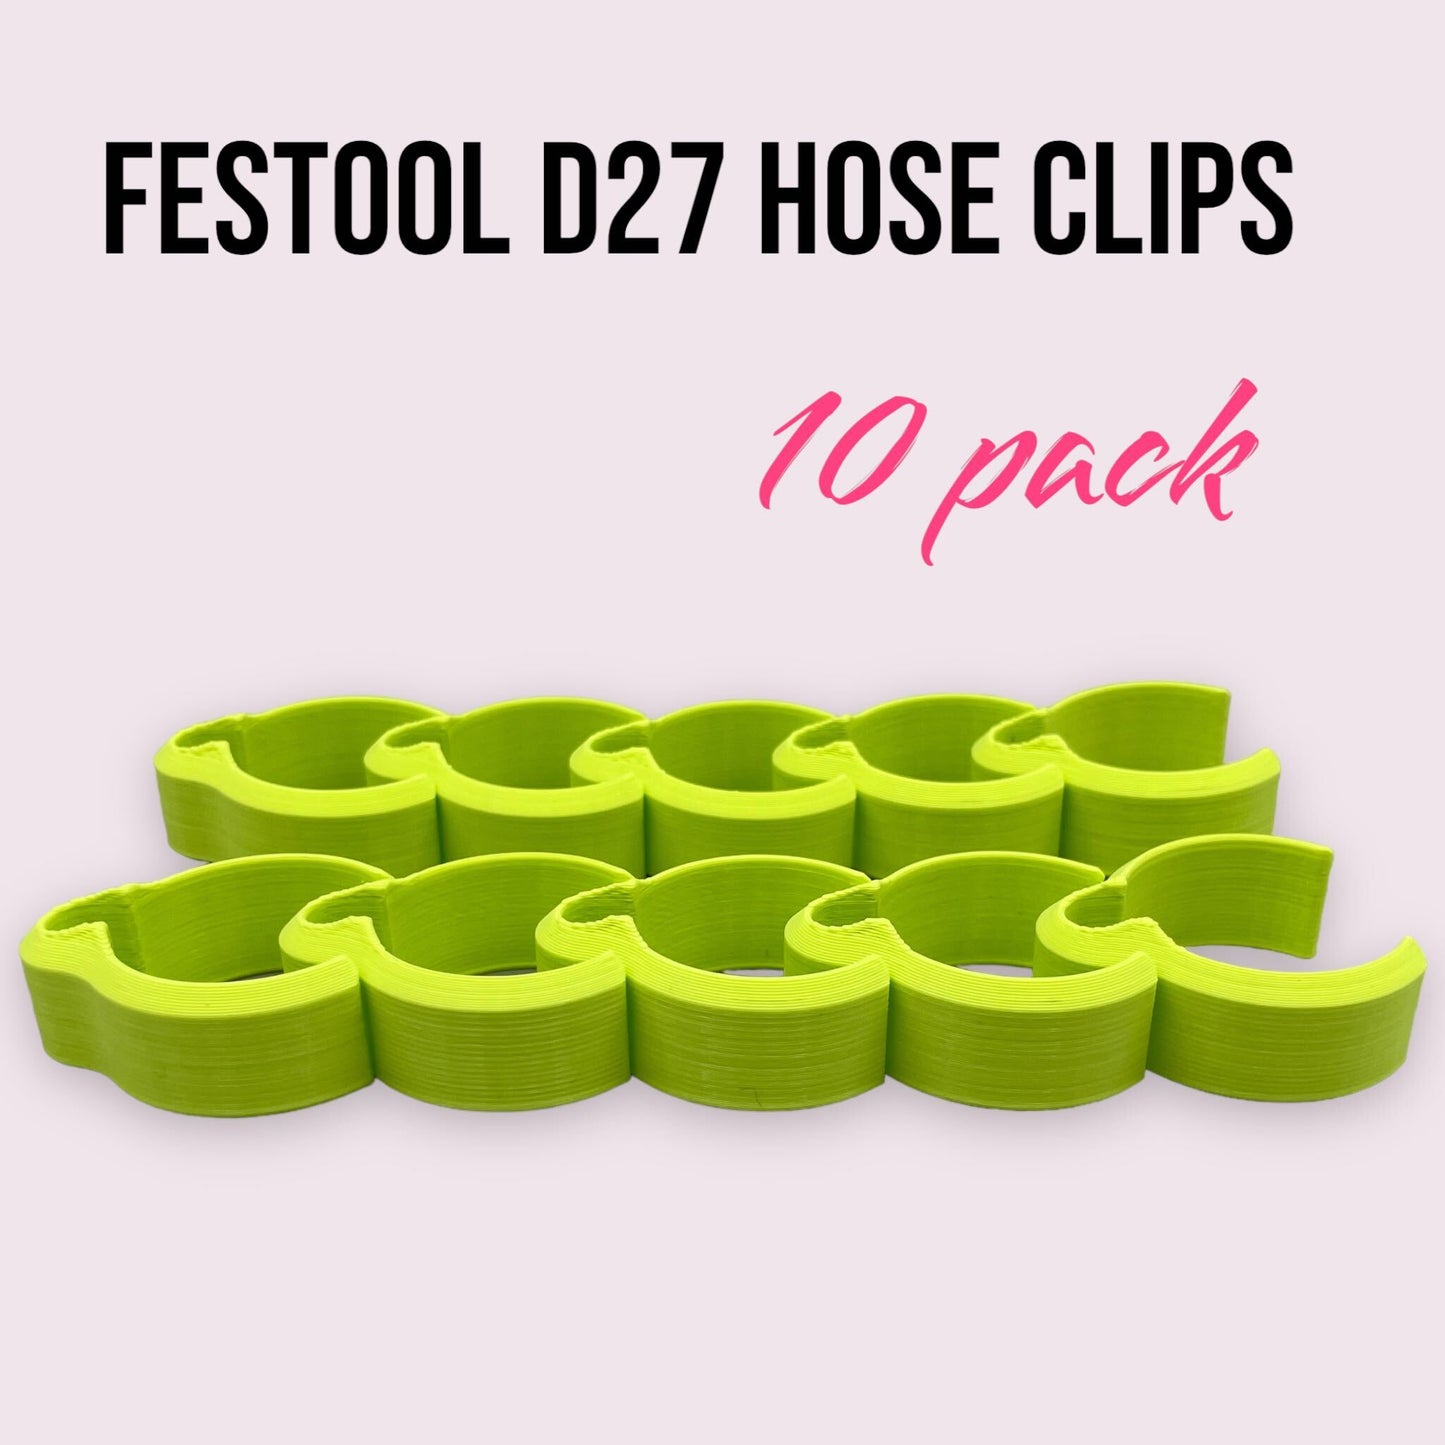 Festool D27 Hose Clips